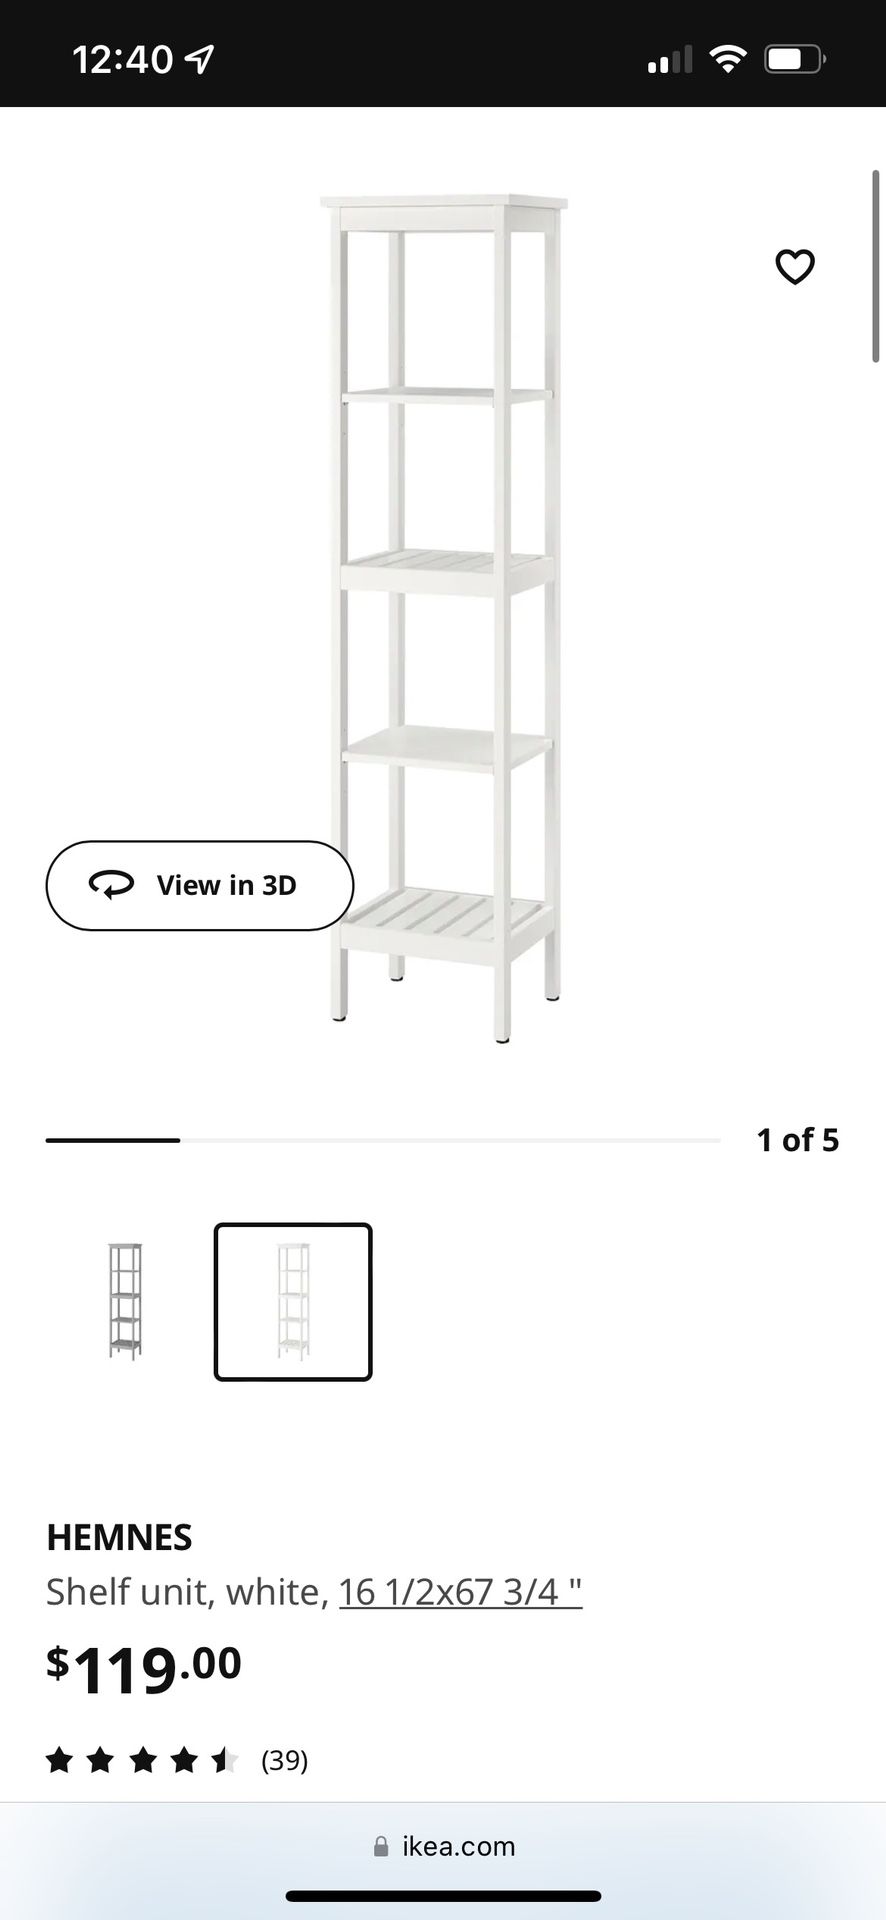 HEMNES Shelf unit, white, 16 1/2x67 3/4 - IKEA